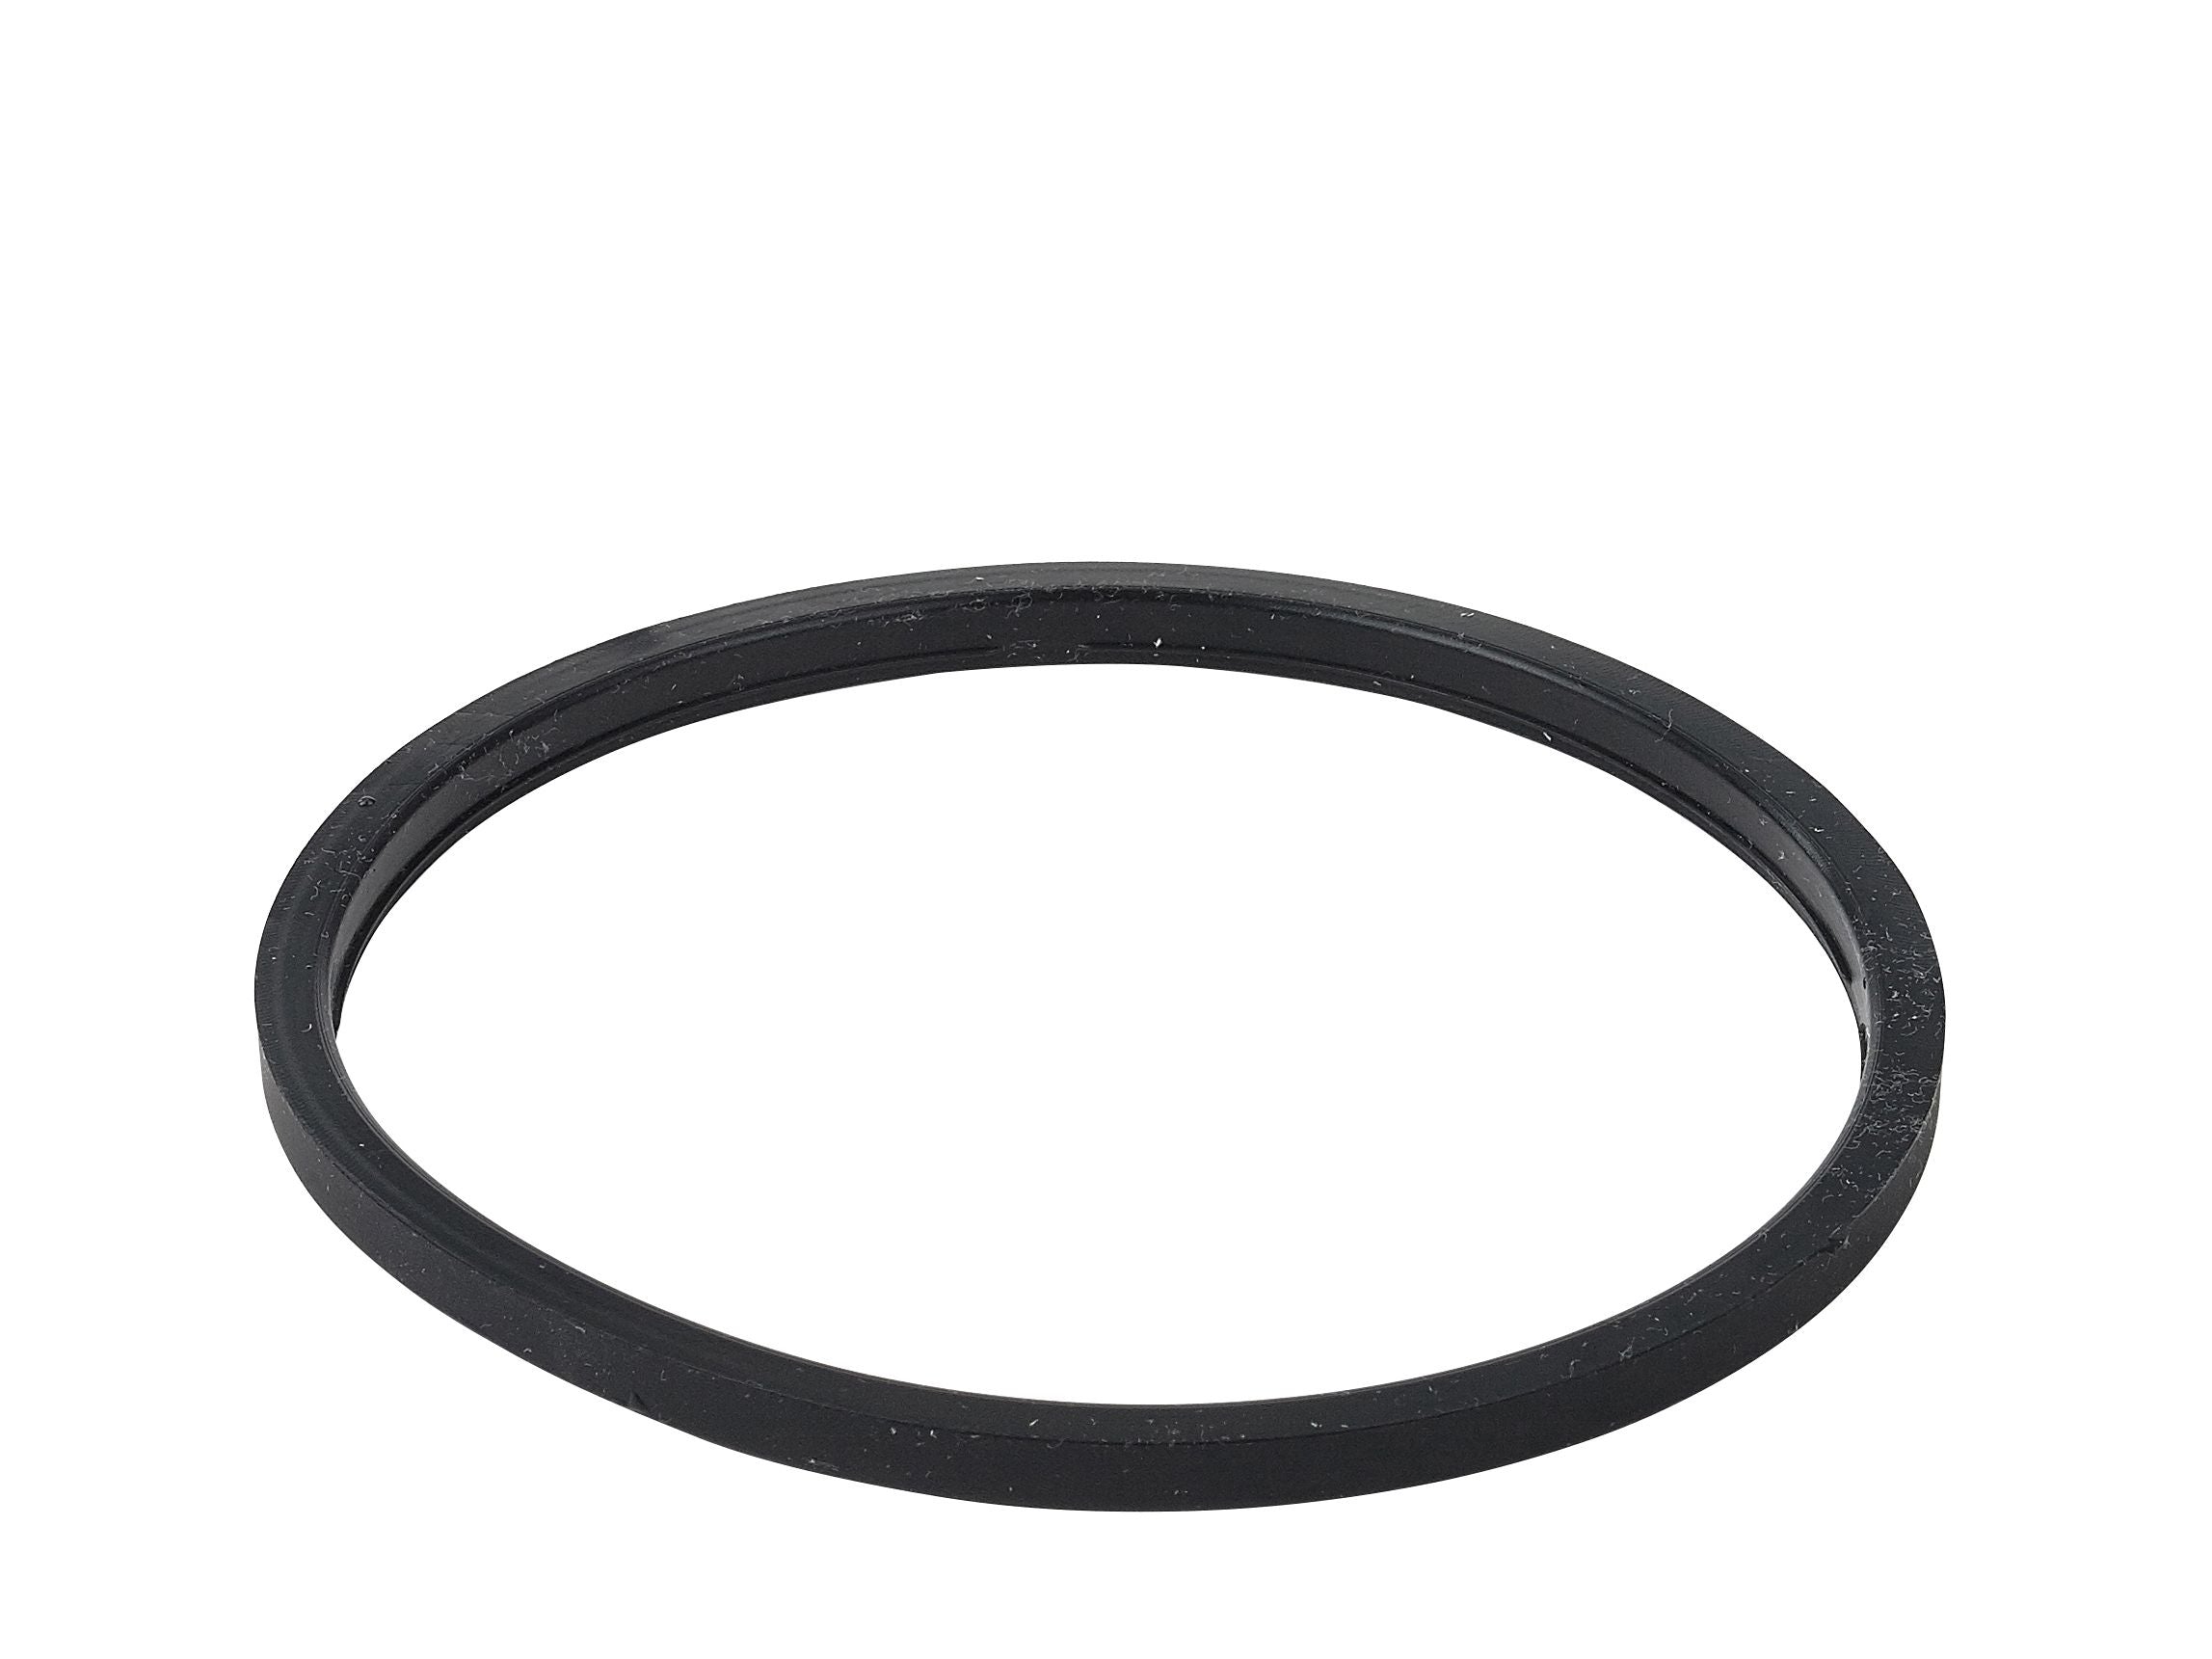 Rosti margrethe spodní prsten pro ocelovou misku 2 litr, černá